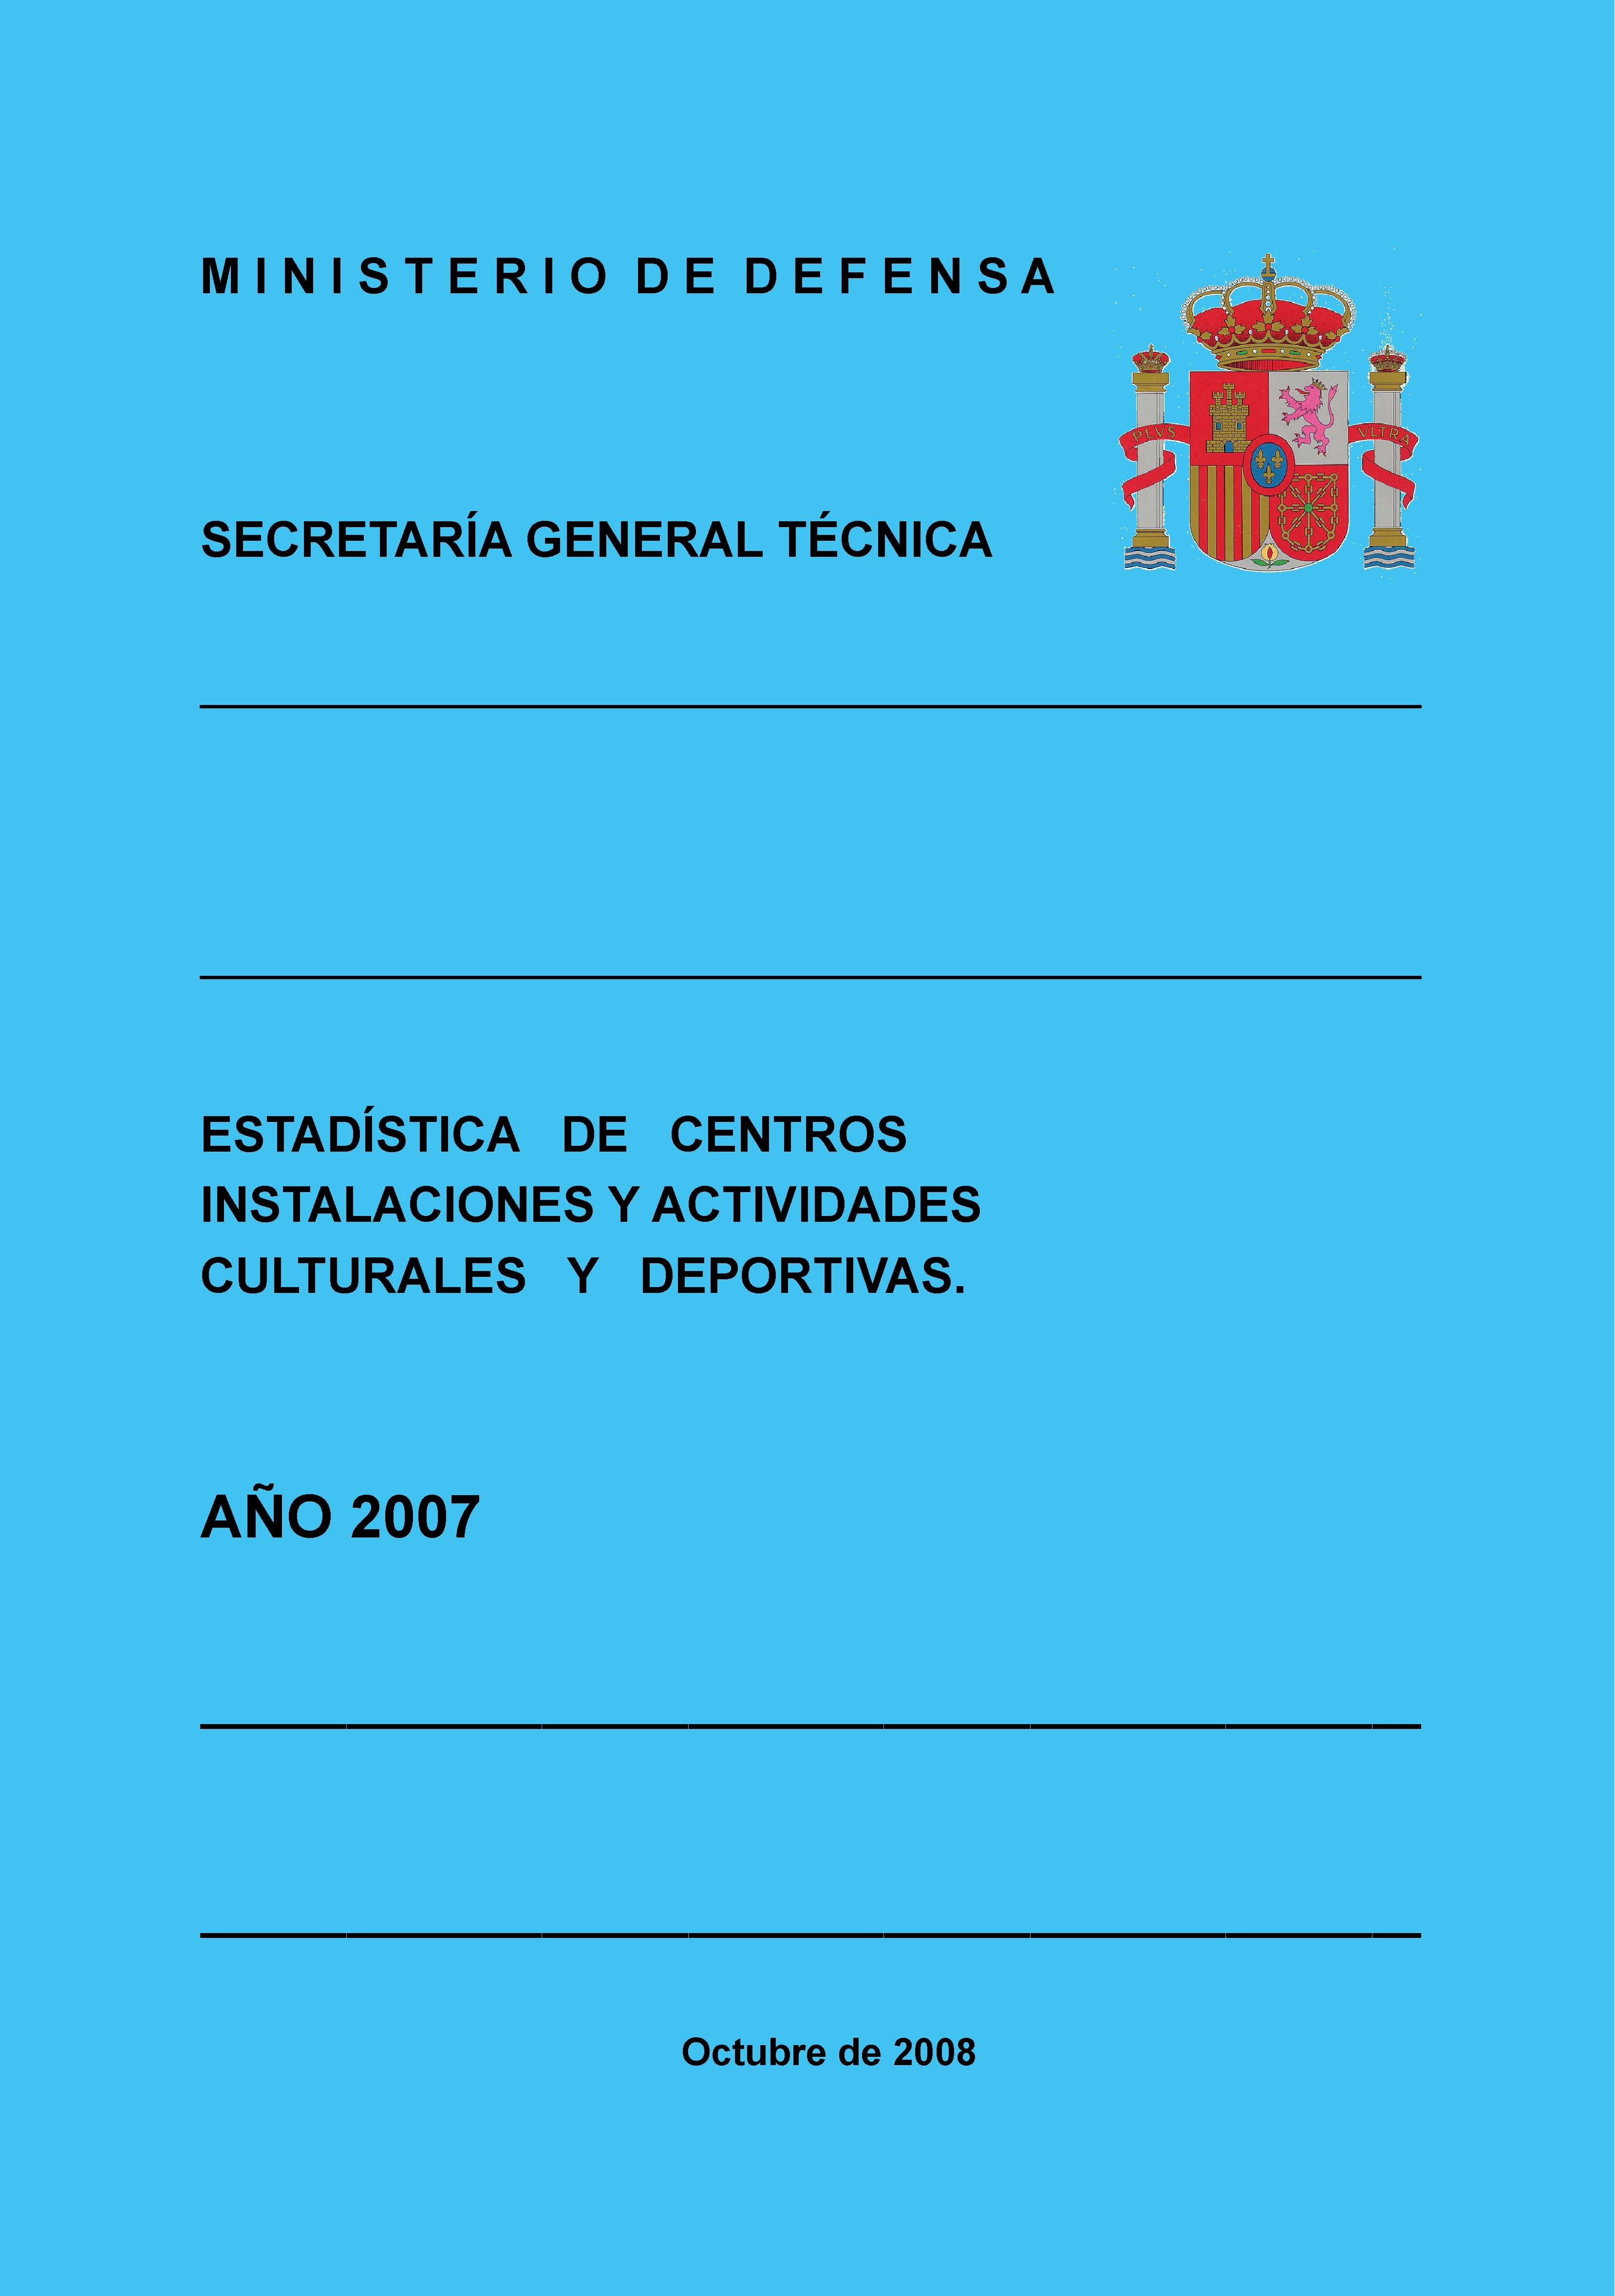 ESTADÍSTICA DE CENTROS, INSTALACIONES Y ACTIVIDADES CULTURALES Y DEPORTIVAS 2007